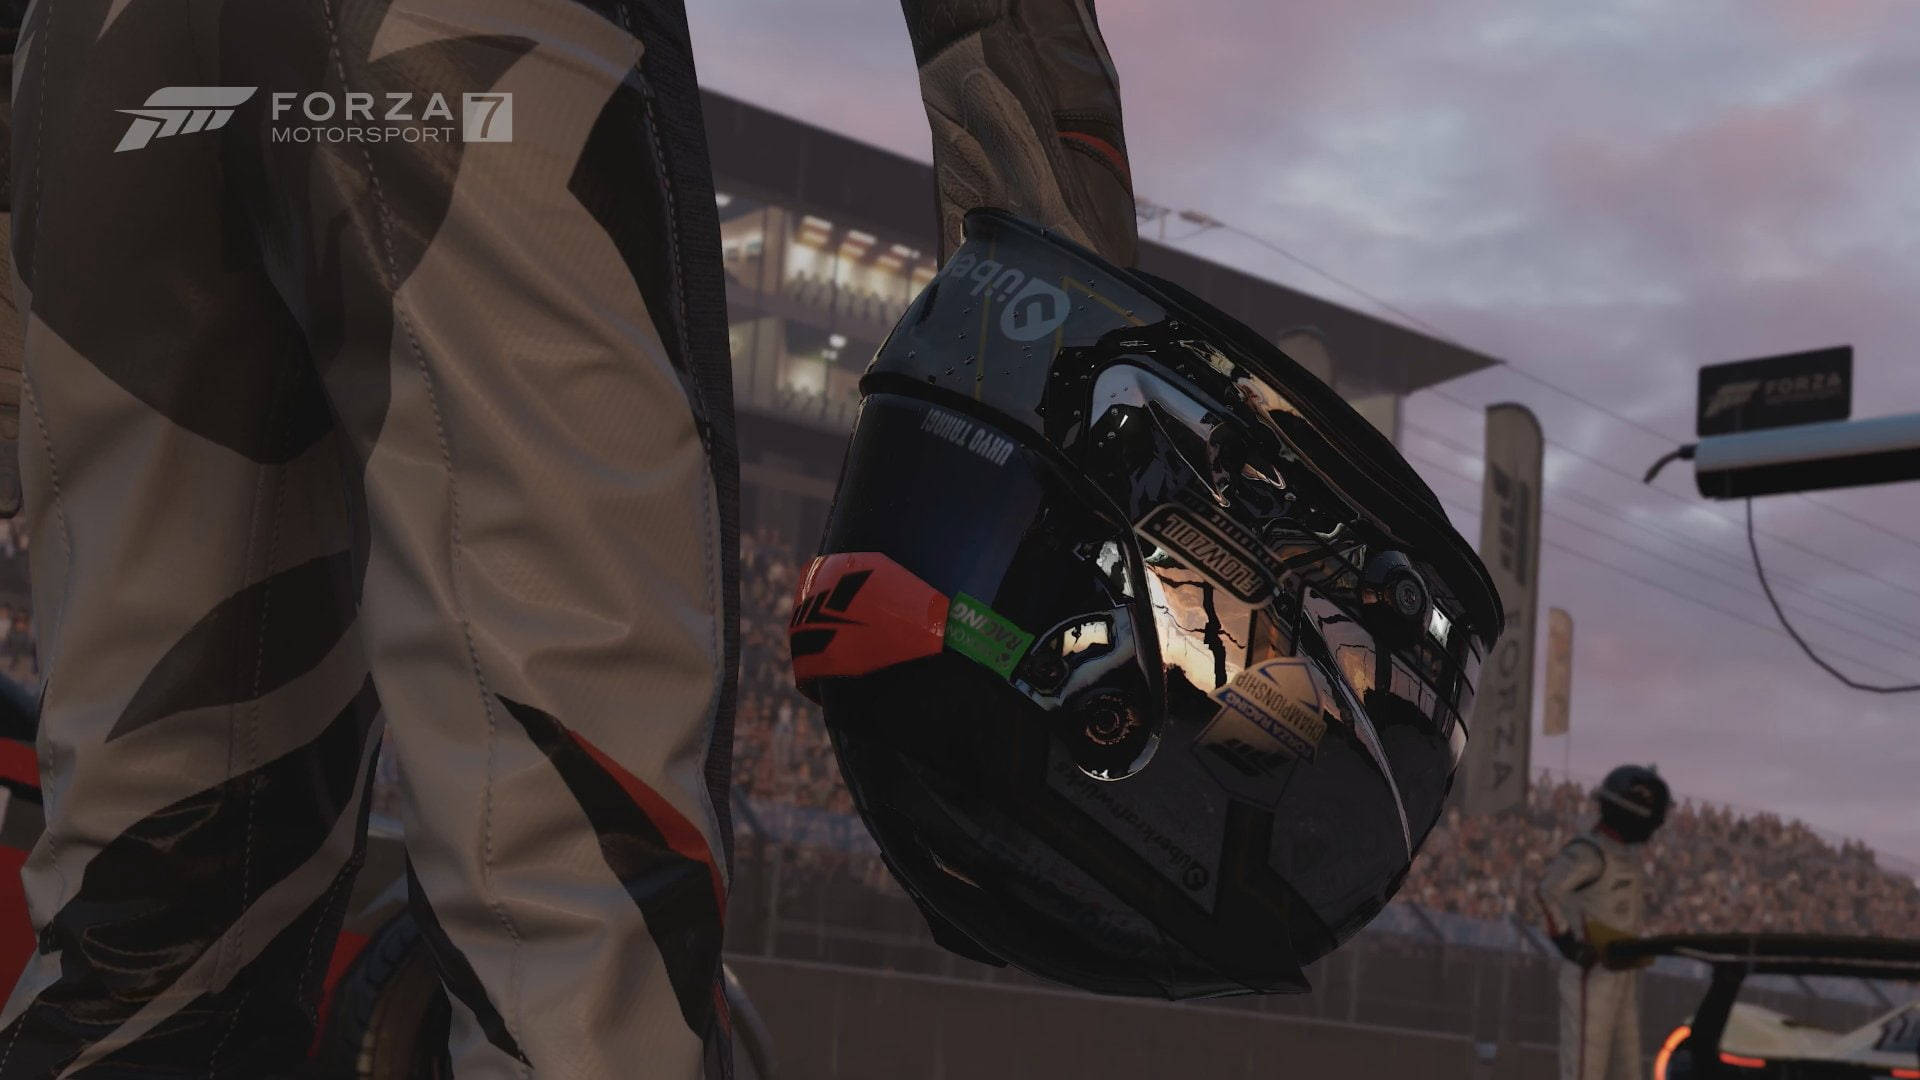 Forza Motorsport 7 Racer's Helmet Picture